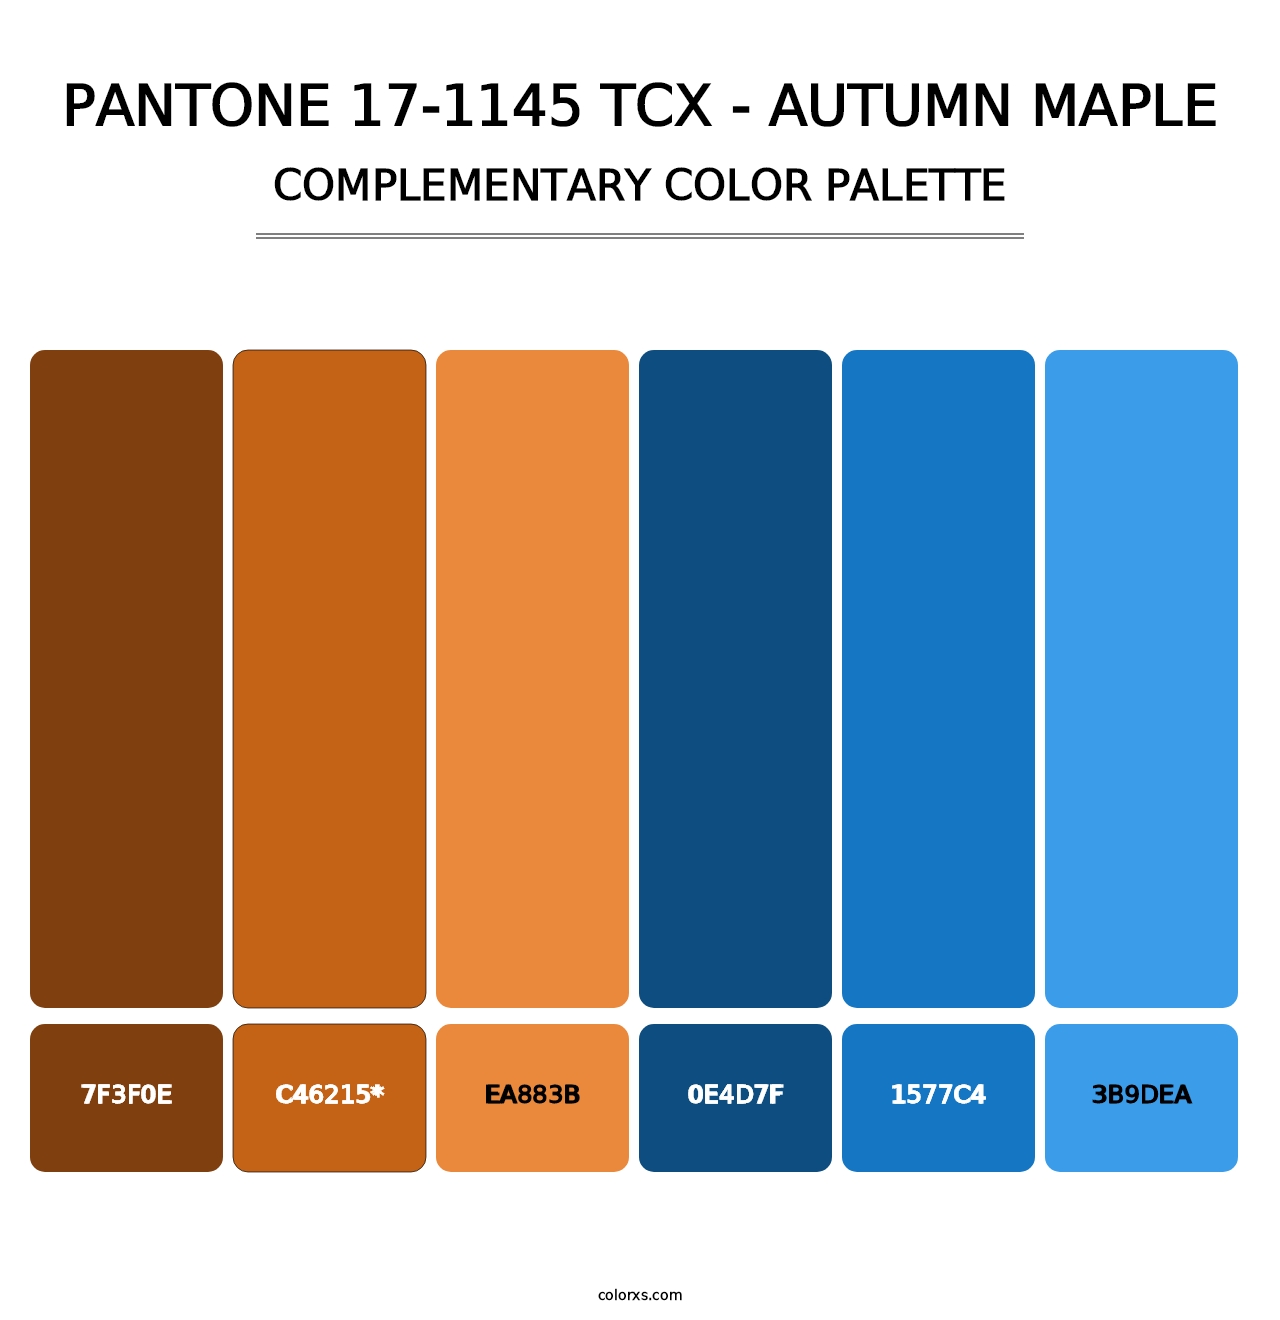 PANTONE 17-1145 TCX - Autumn Maple - Complementary Color Palette